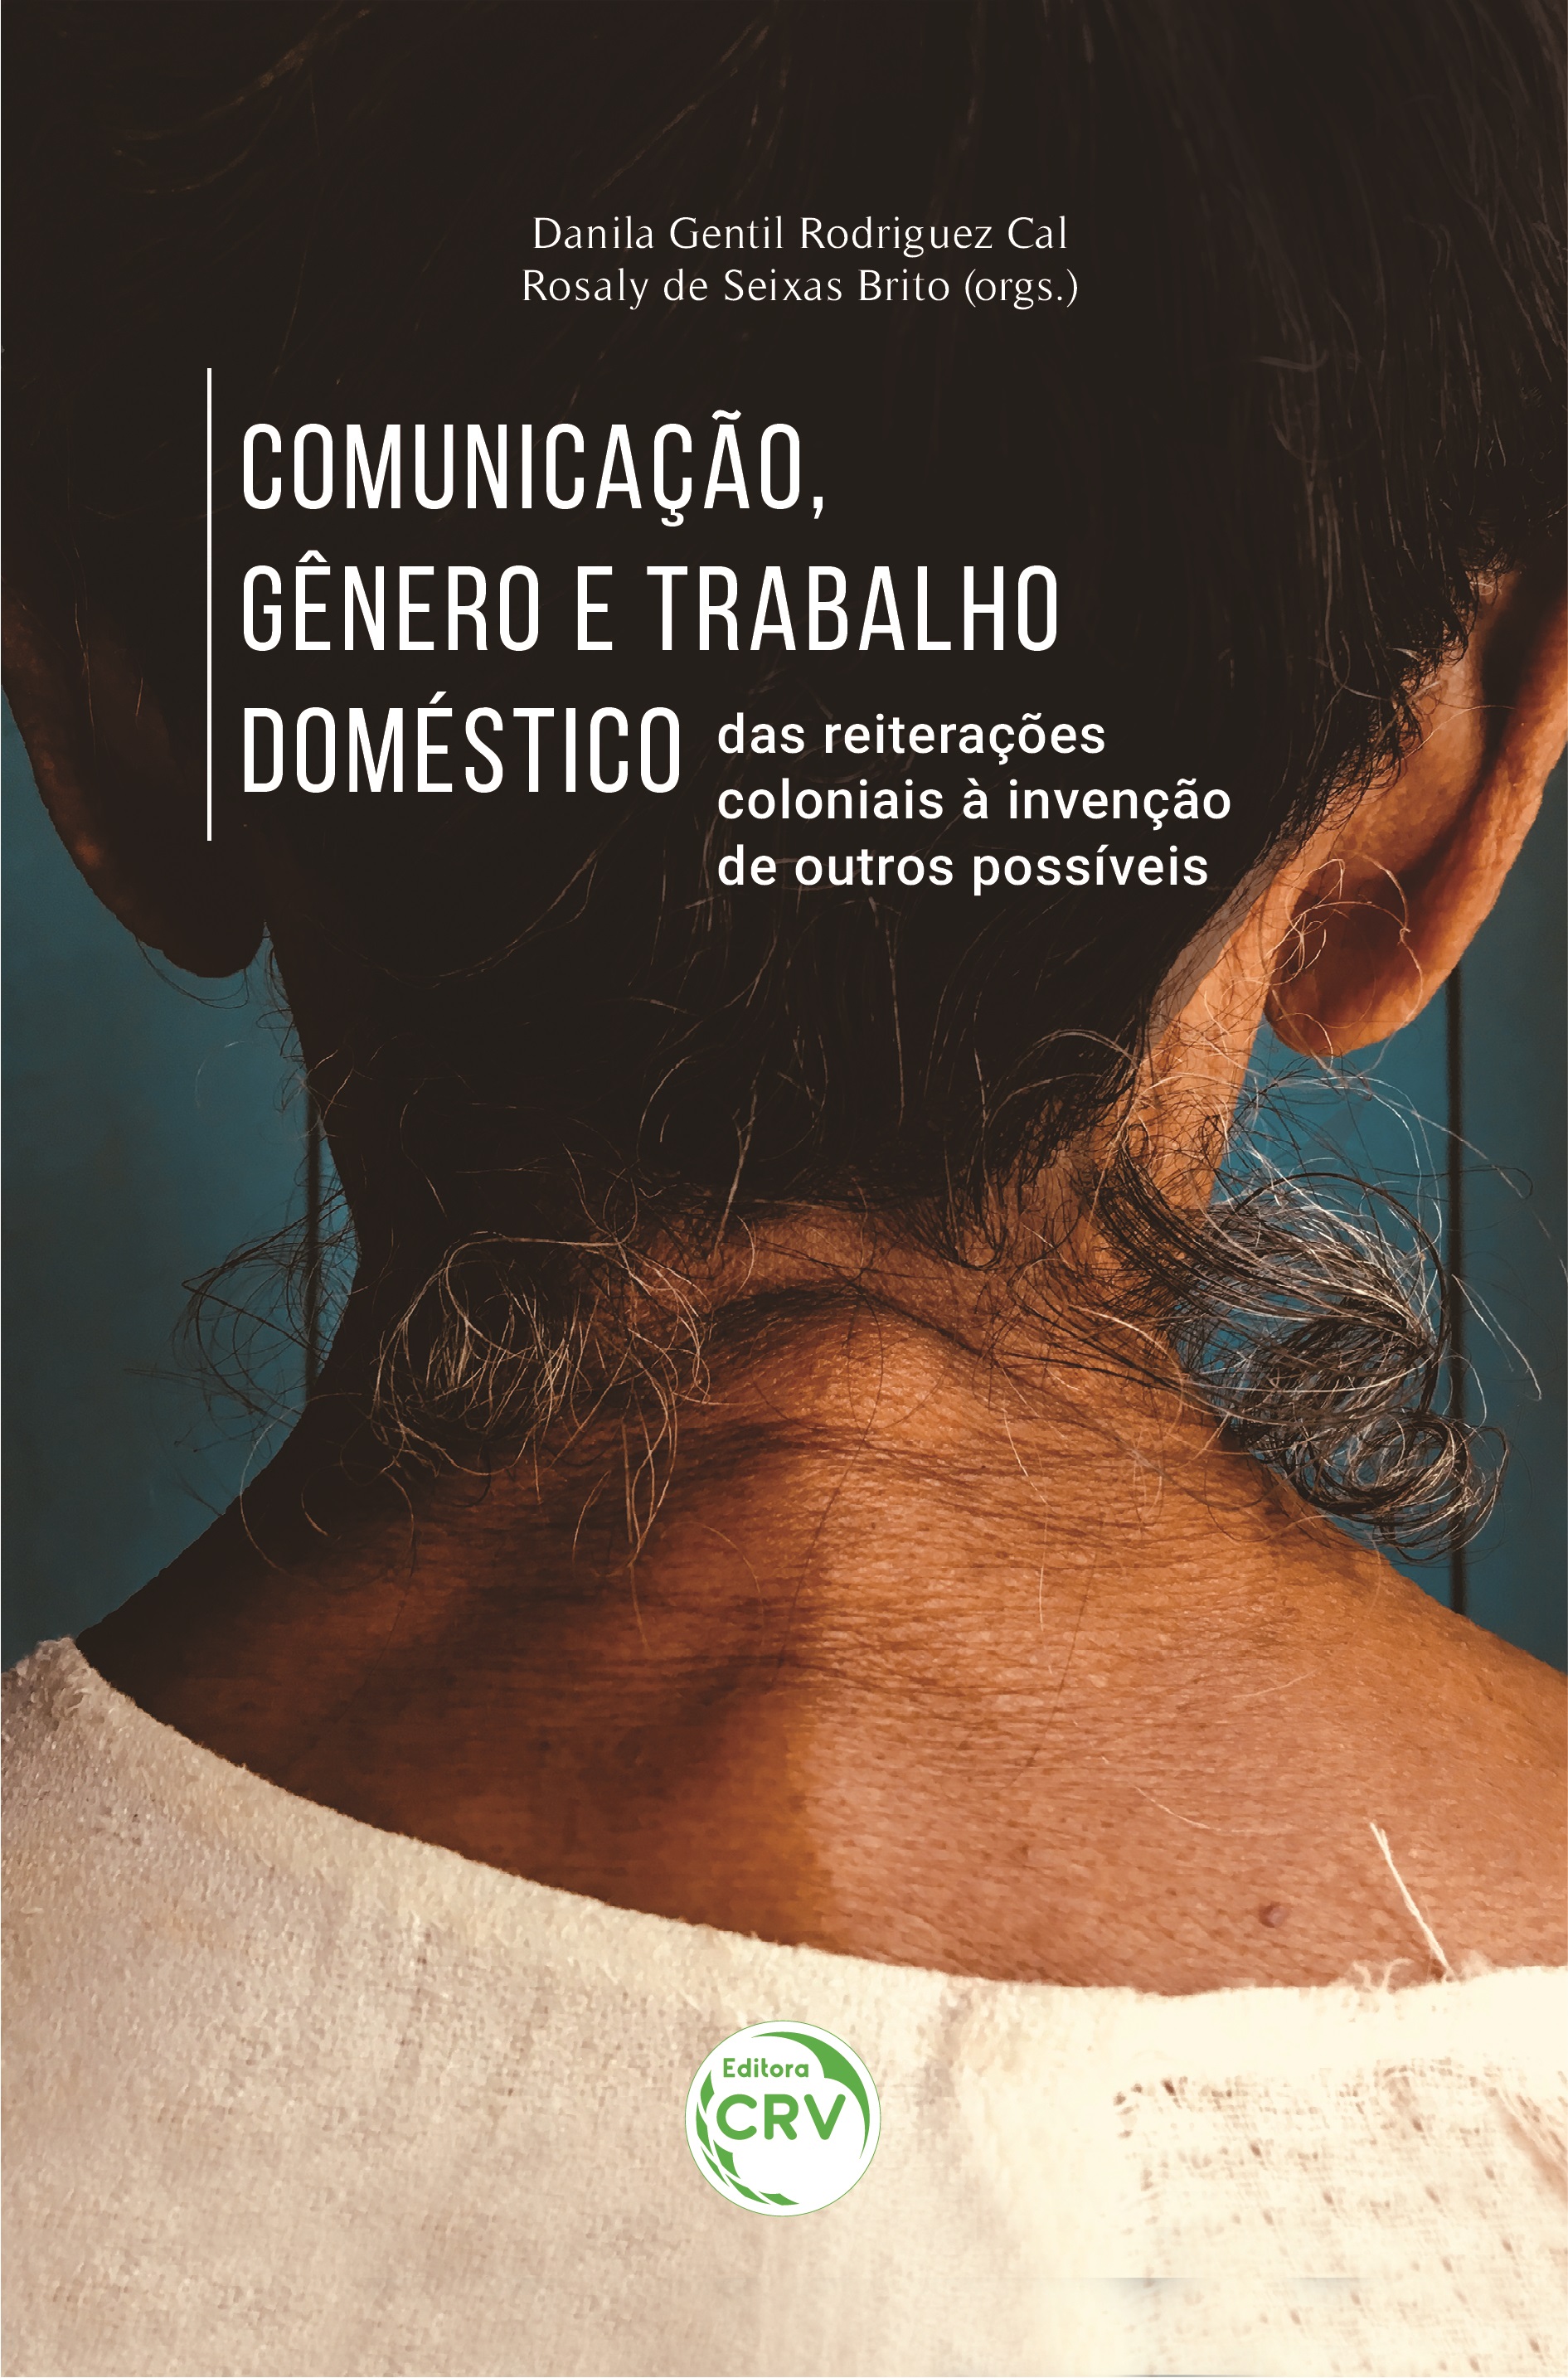 Cover of the book "Communication, gender and domestic work". Source: https://www.editoracrv.com.br/produtos/detalhes/35631-crv